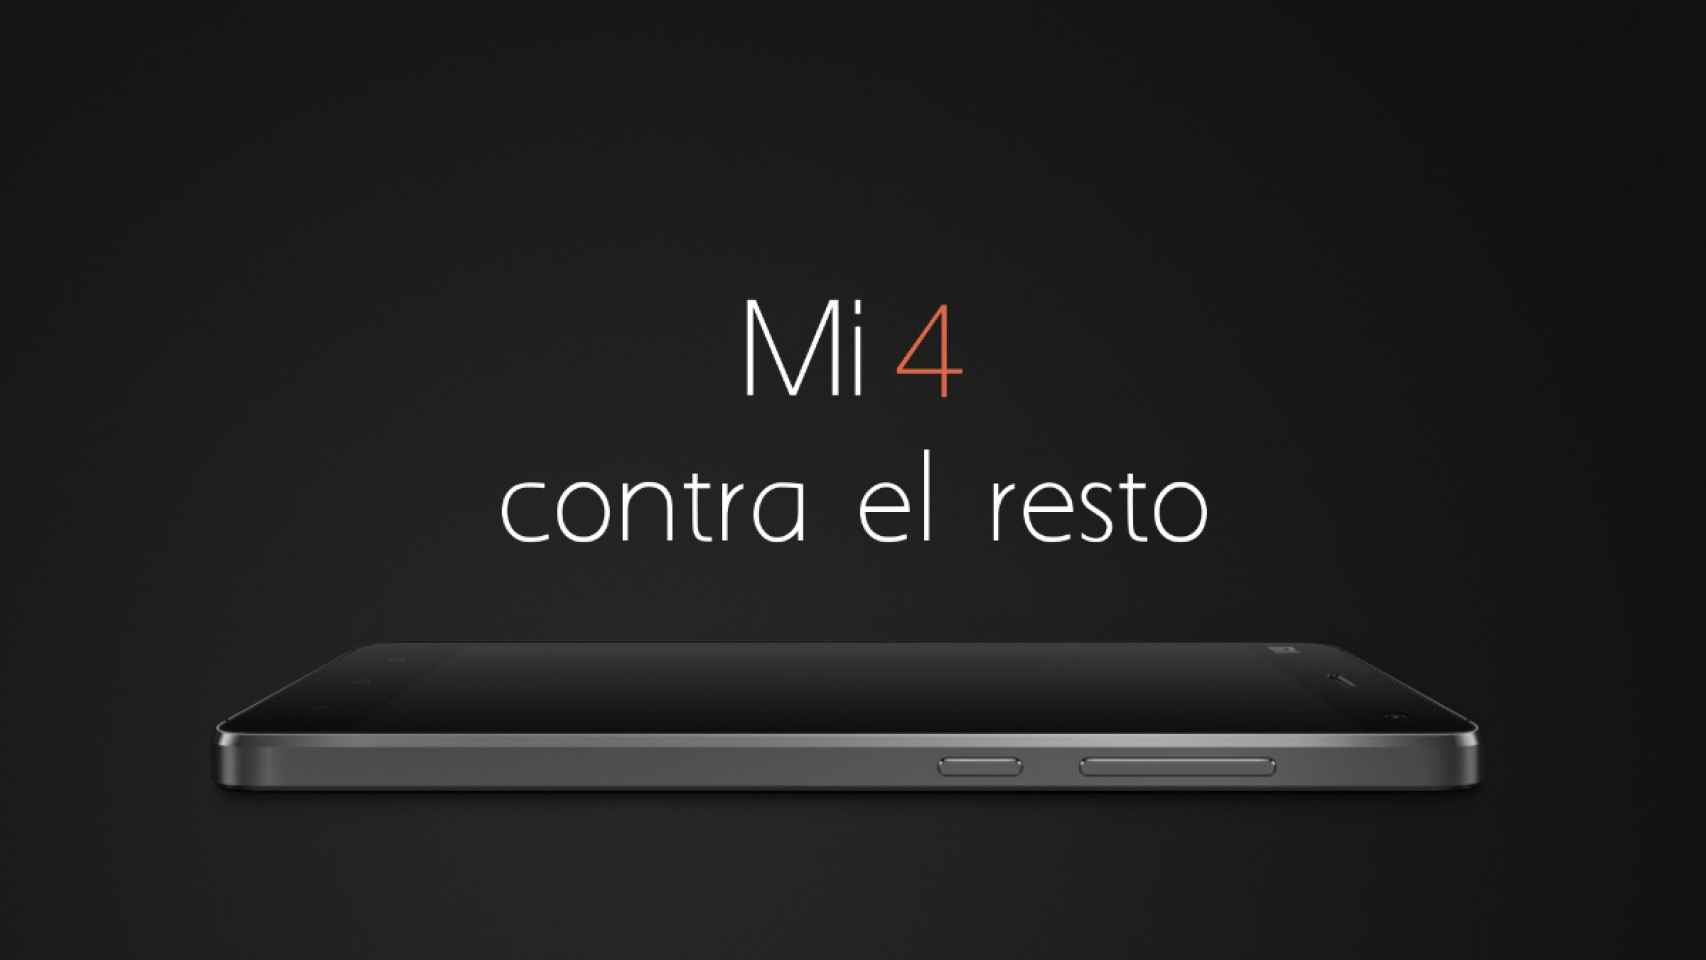 Comparativa técnica: el Xiaomi Mi4 contra el resto de la gama alta Android